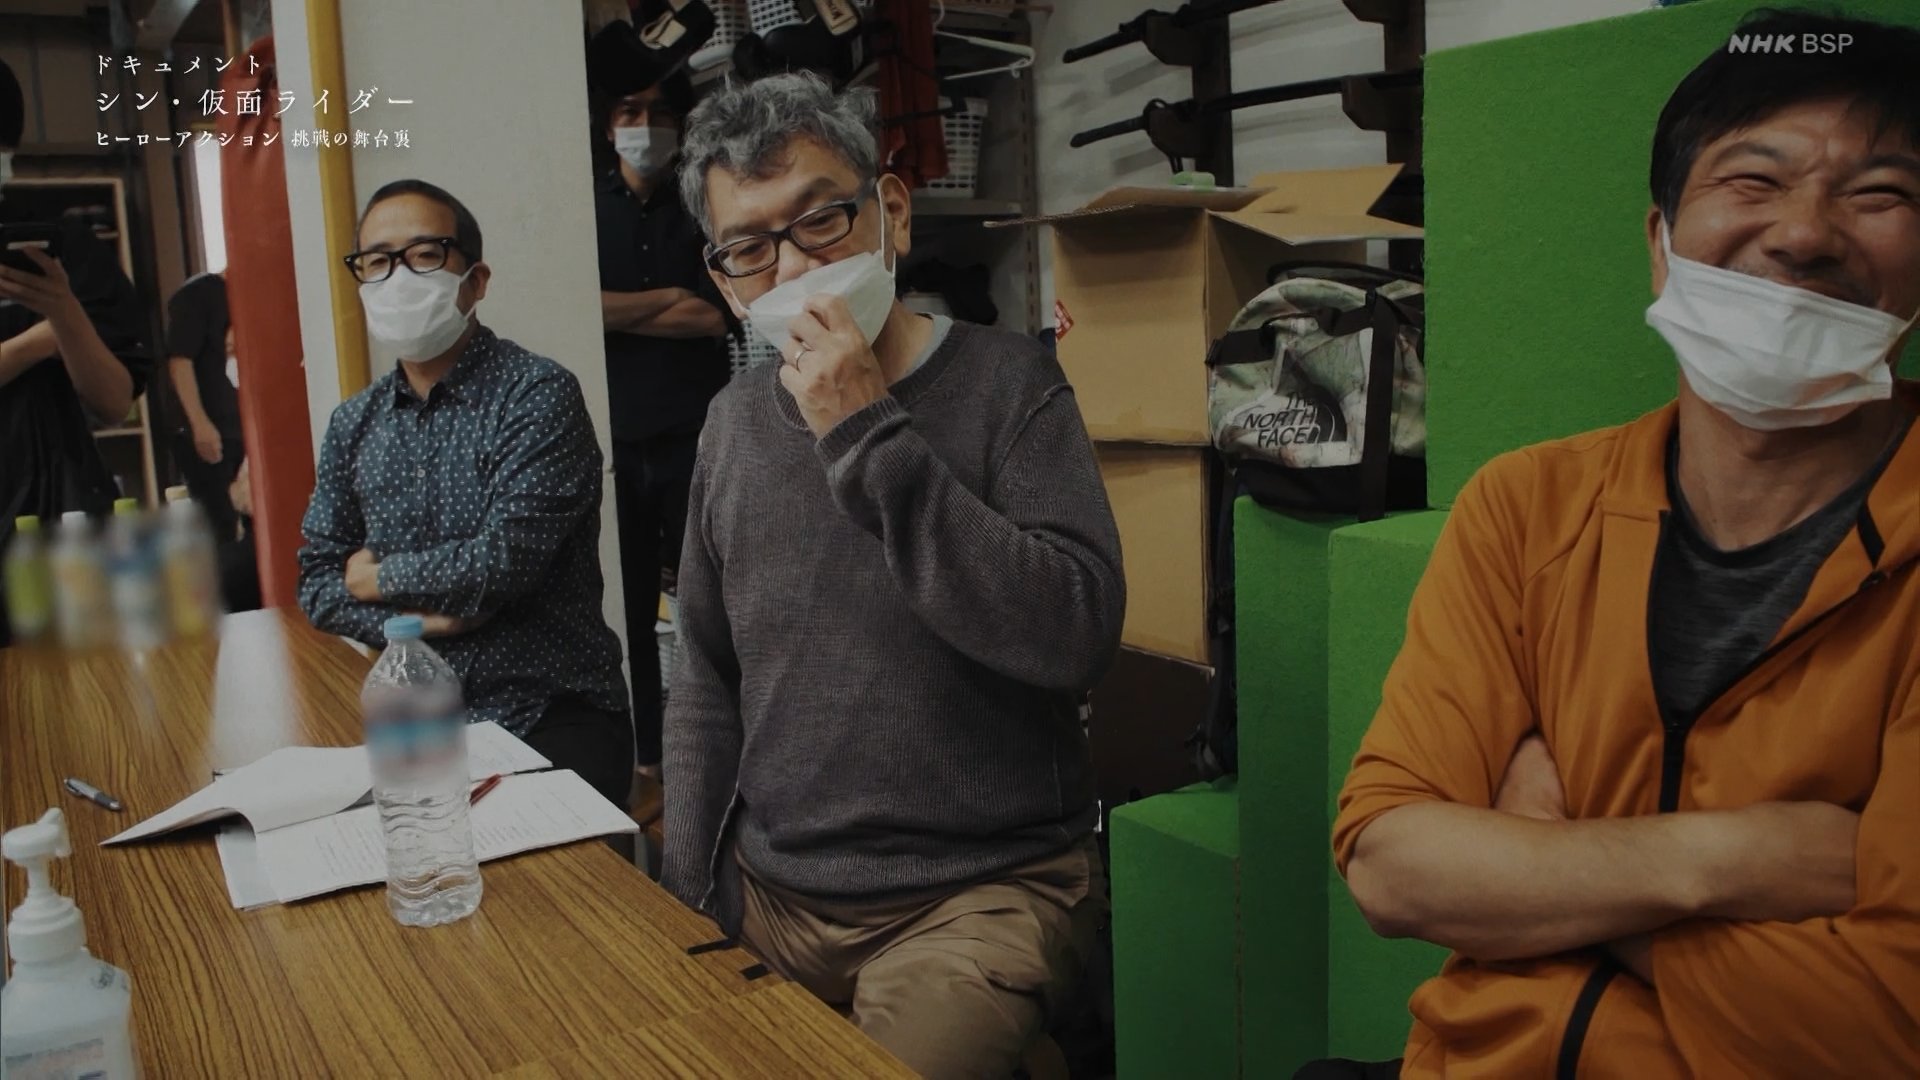 El cineasta Hideaki Anno, tomará un descanso después de 30 años 5